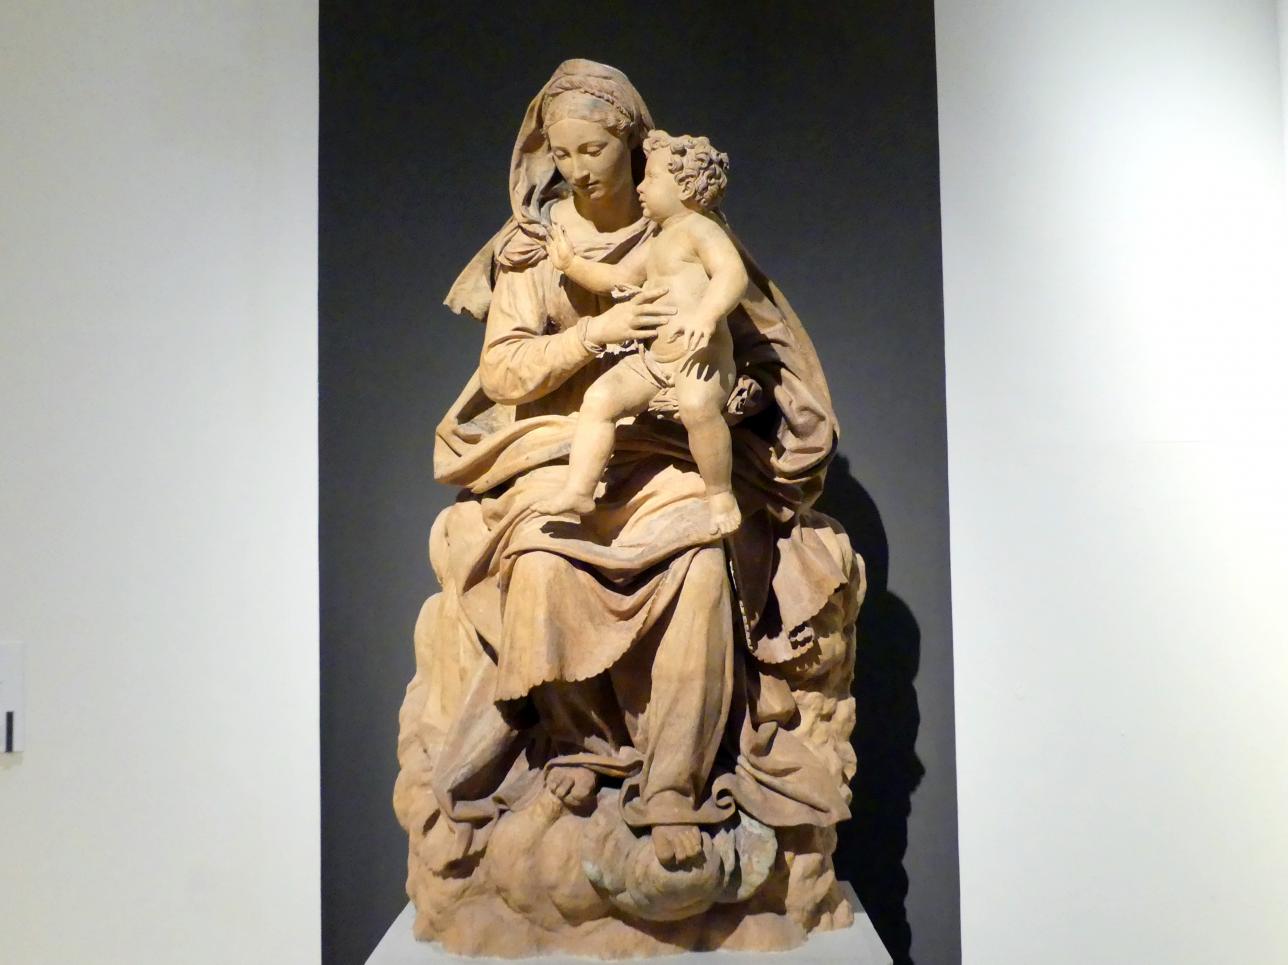 Antonio Begarelli (1529–1540), Maria mit Kind, Modena, Chiesa San Salvatore (am 13. Mai 1944 zerstört), jetzt Modena, Galleria Estense, Saal 11, um 1540